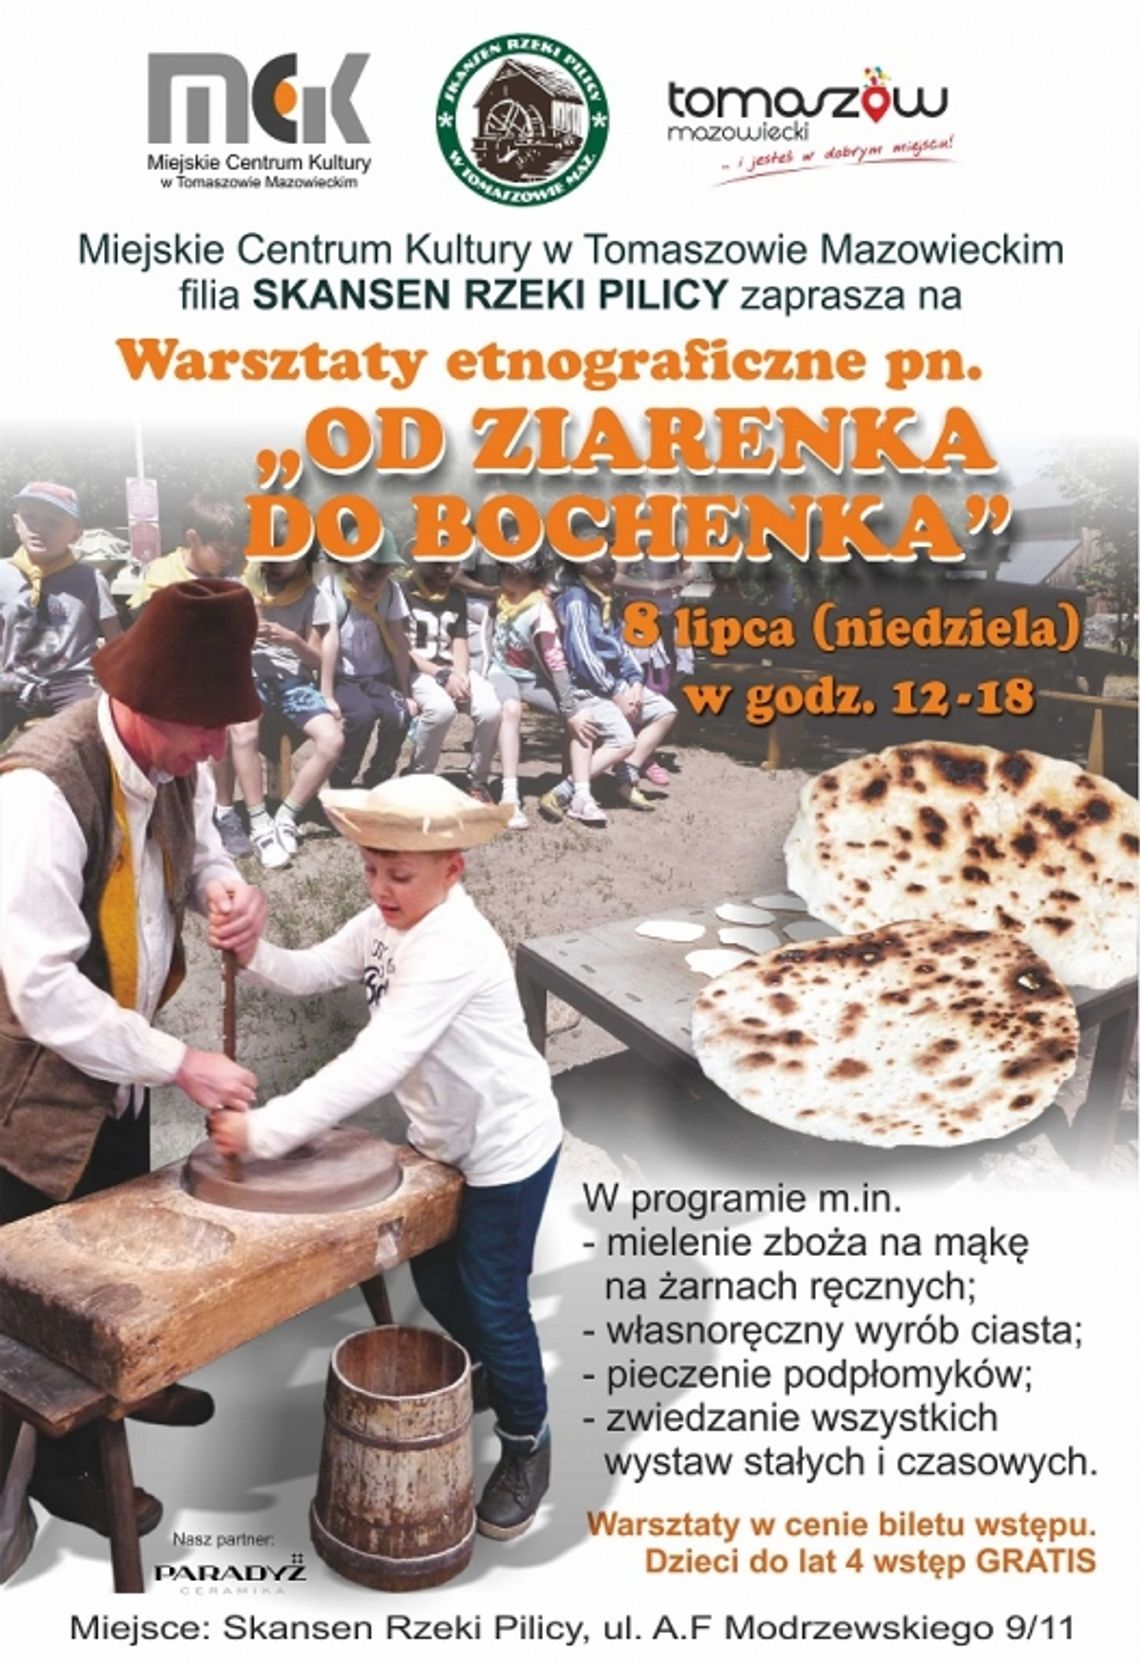 Zaproszenie do Skansenu Rzeki Pilicy na warsztaty etnograficzne „Od ziarenka do bochenka”